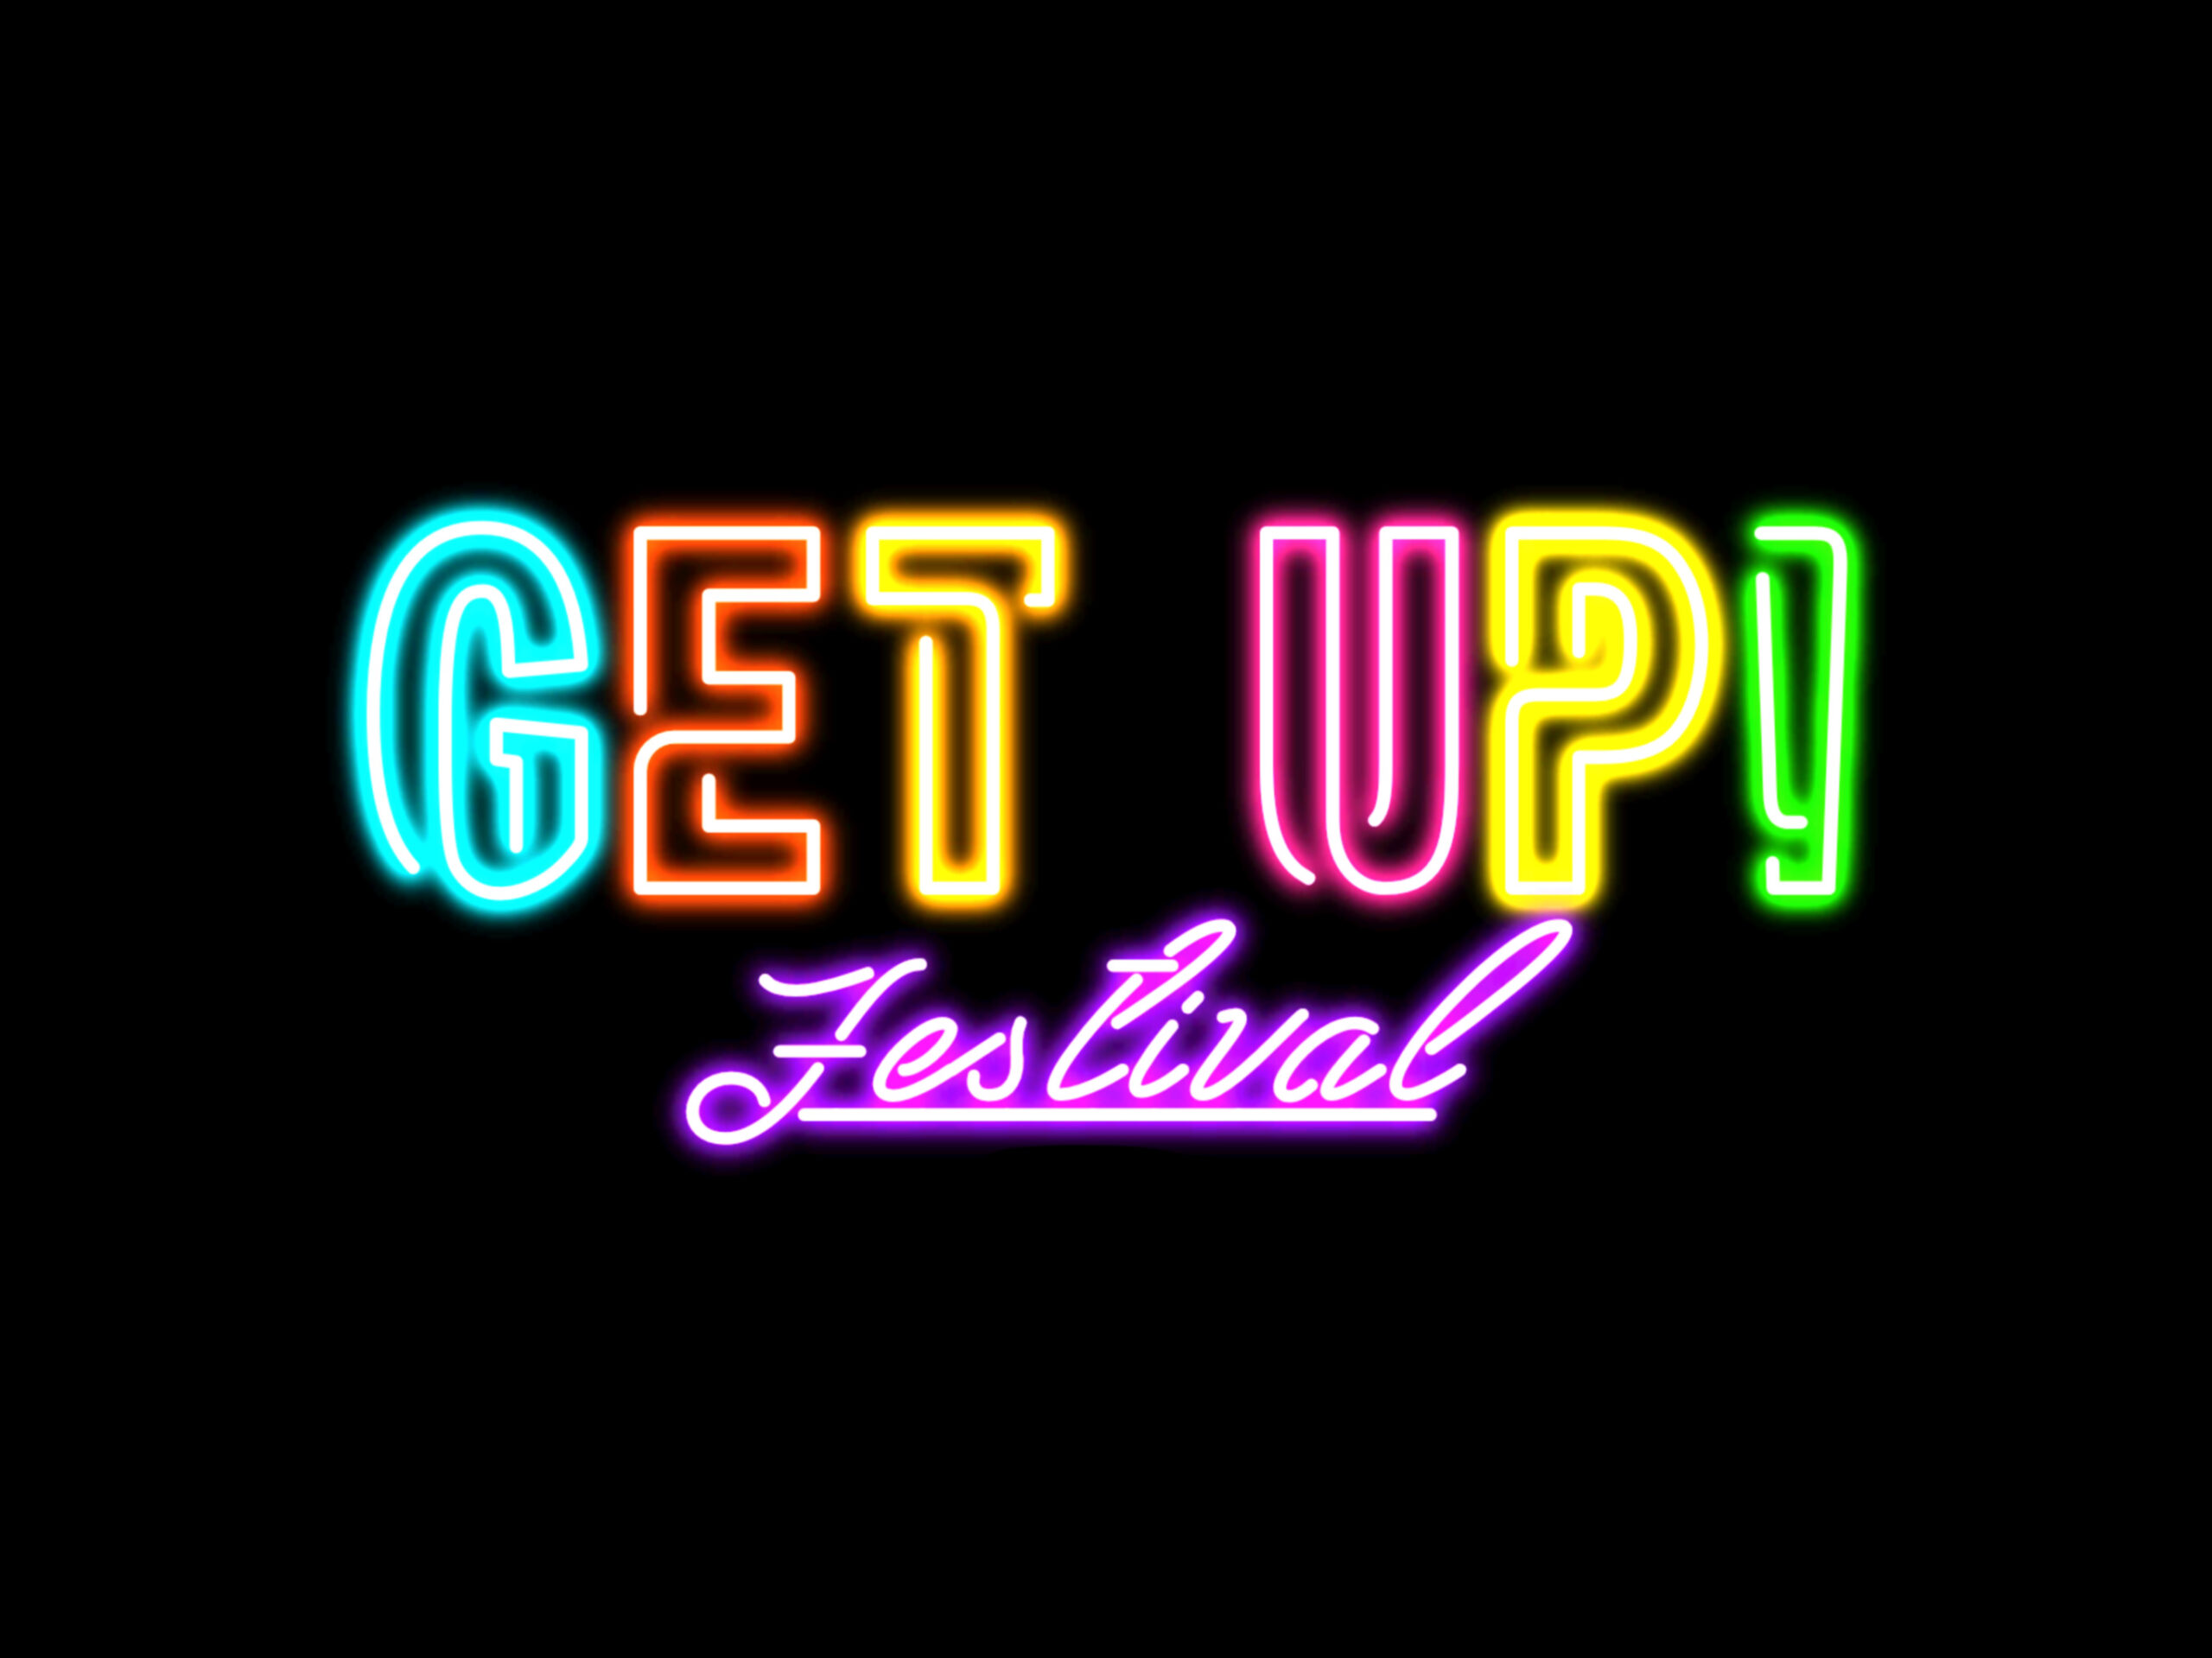 Get Up! Een festival voor en door jongeren 17 juni 2022 Kleine